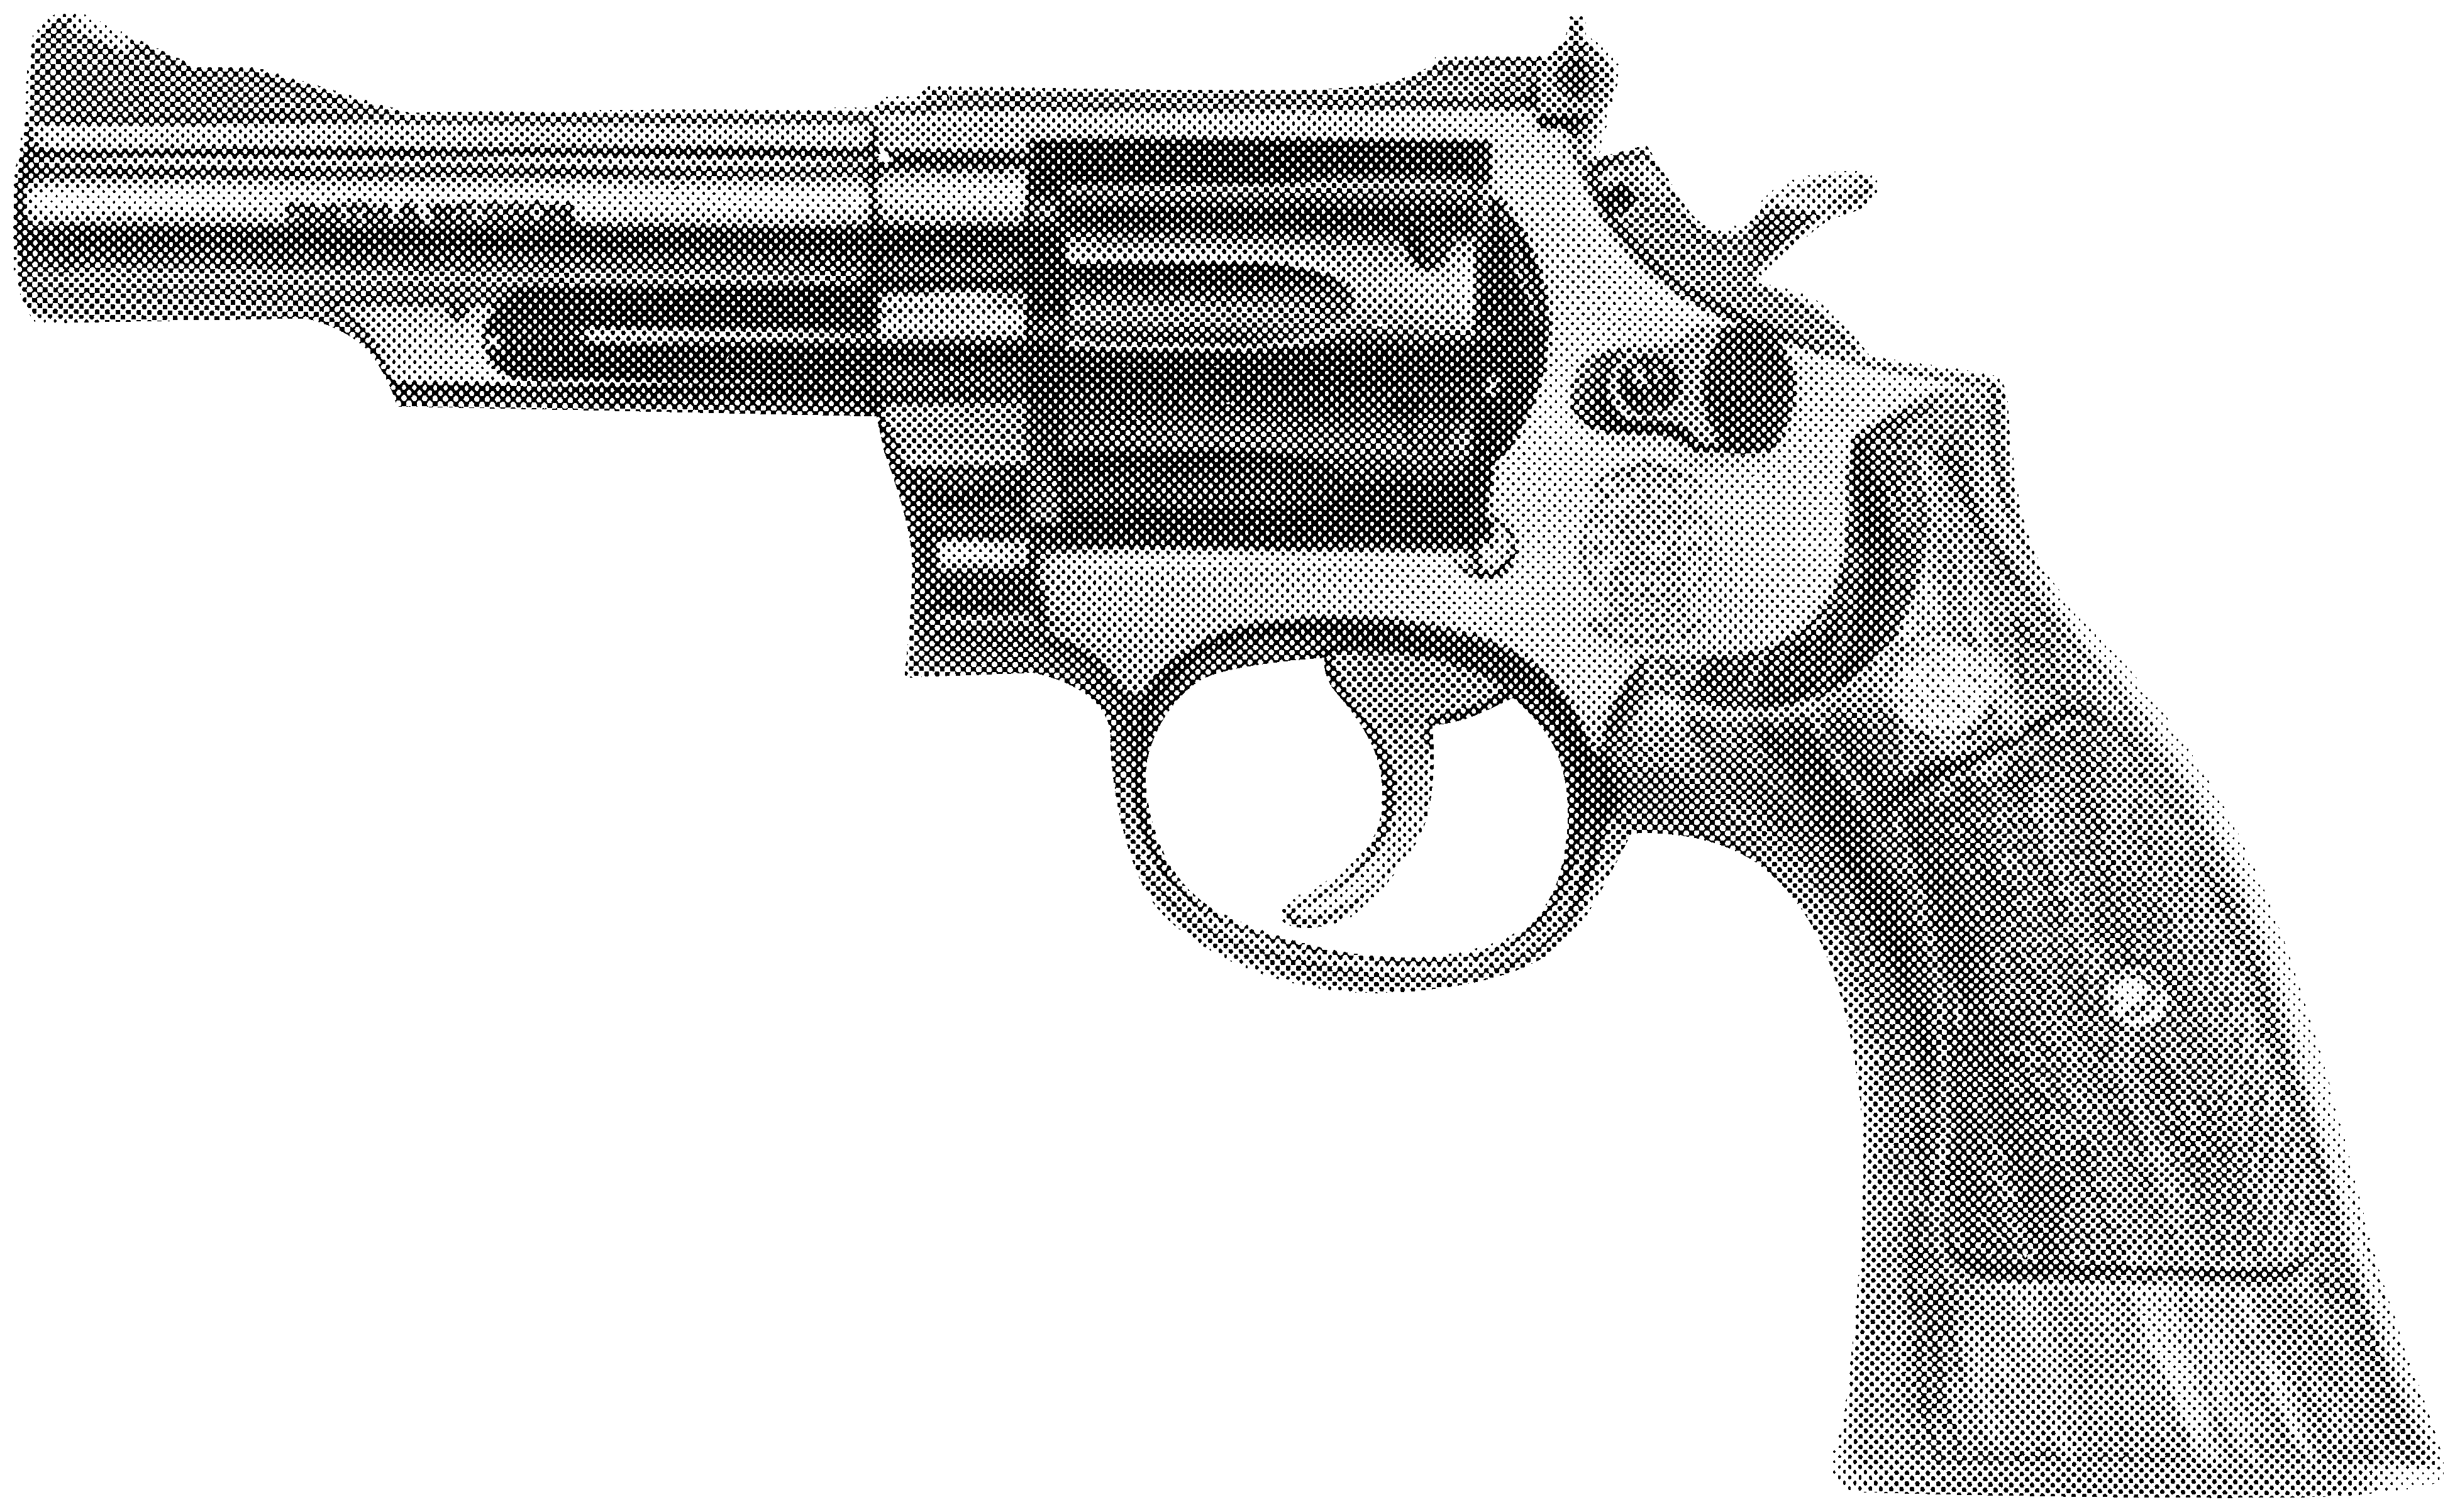 Model 19 (.357 Combat Magnum)